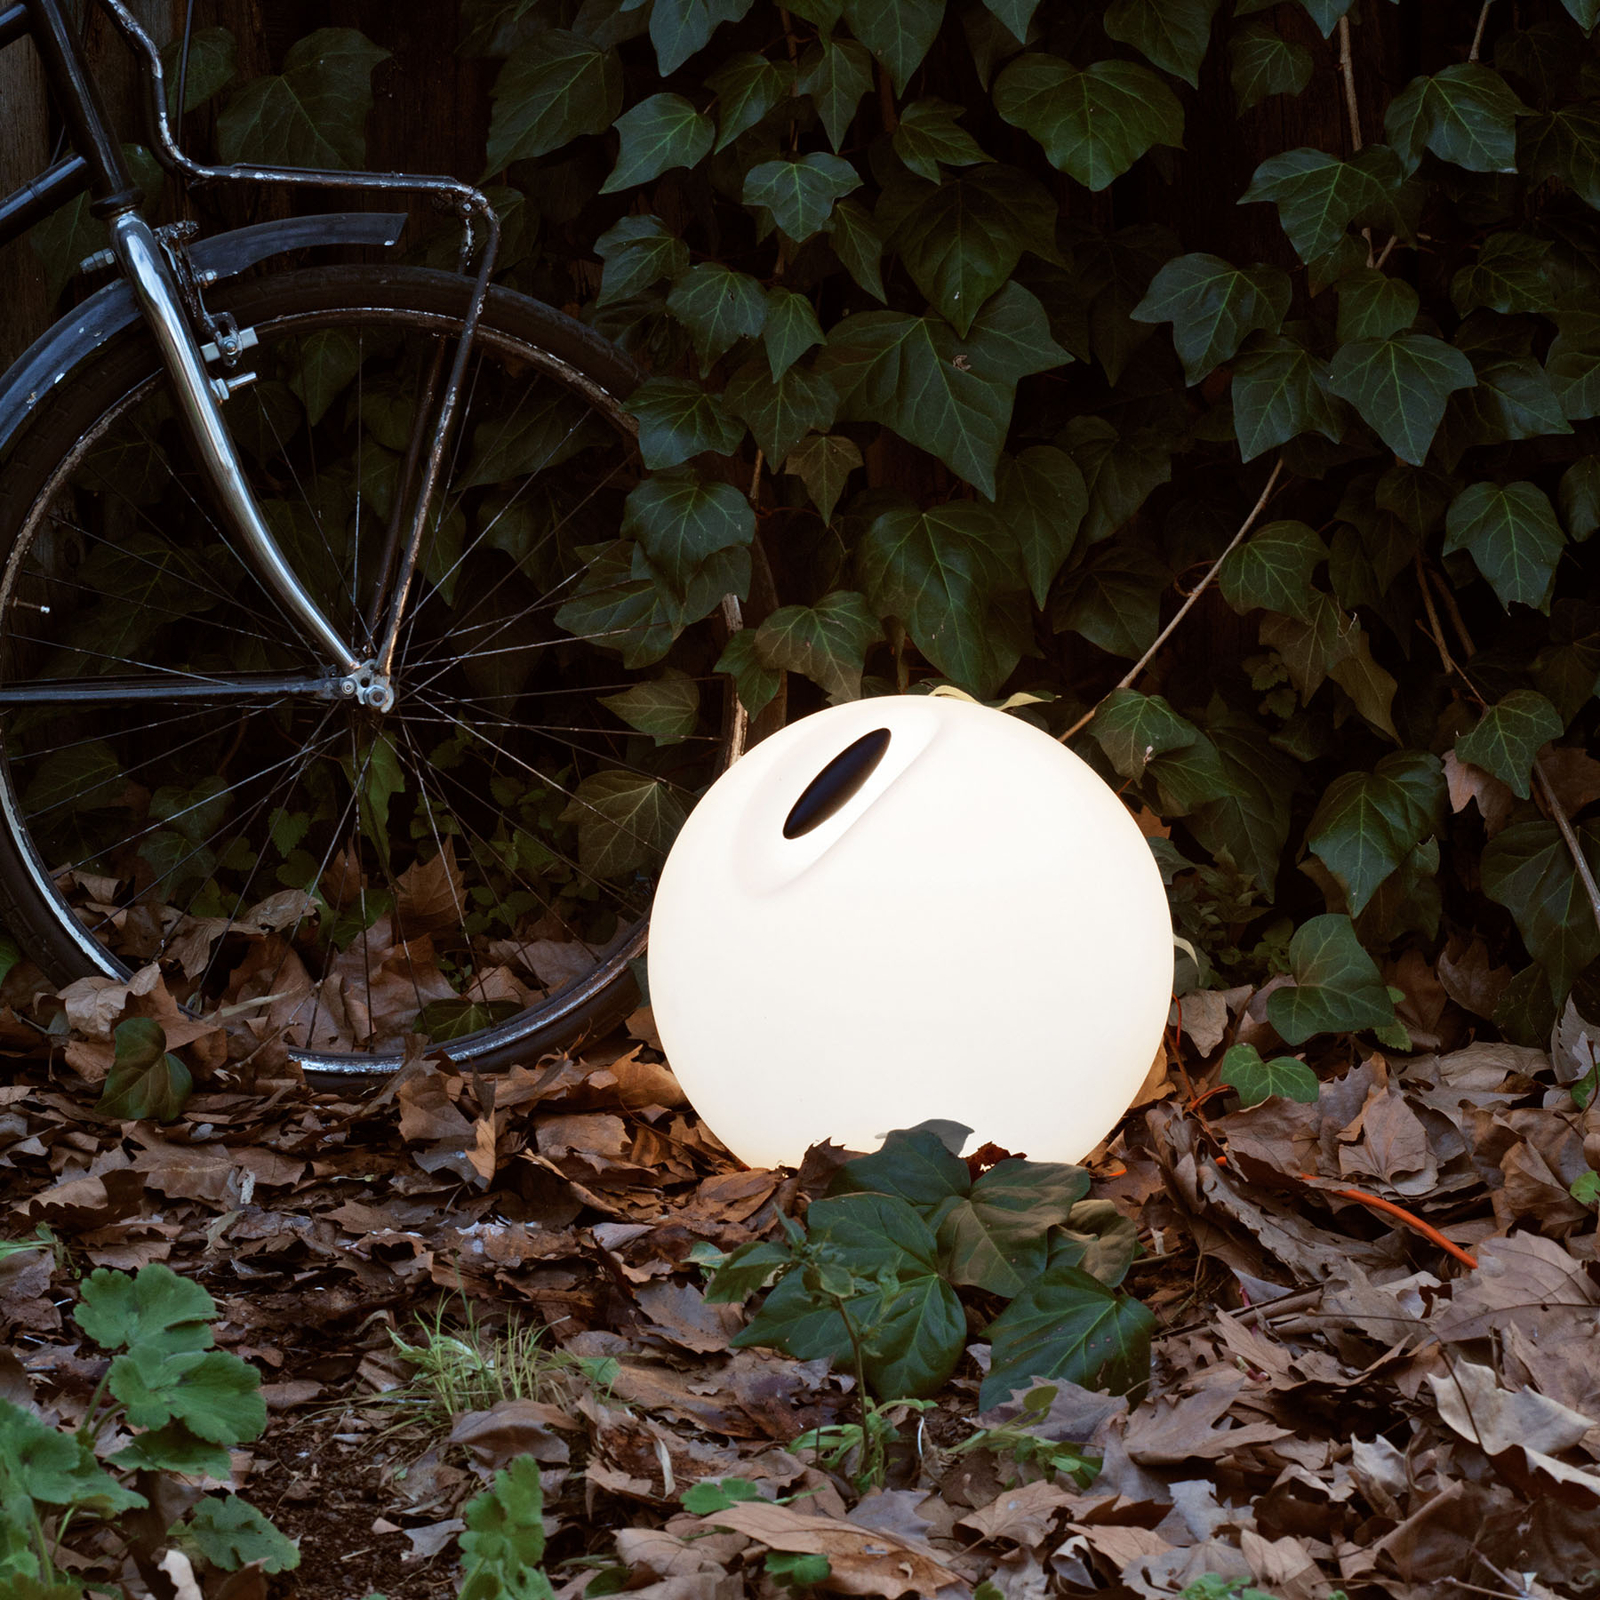 Martinelli Luce Bowl lichtbol voor buiten Ø 35cm